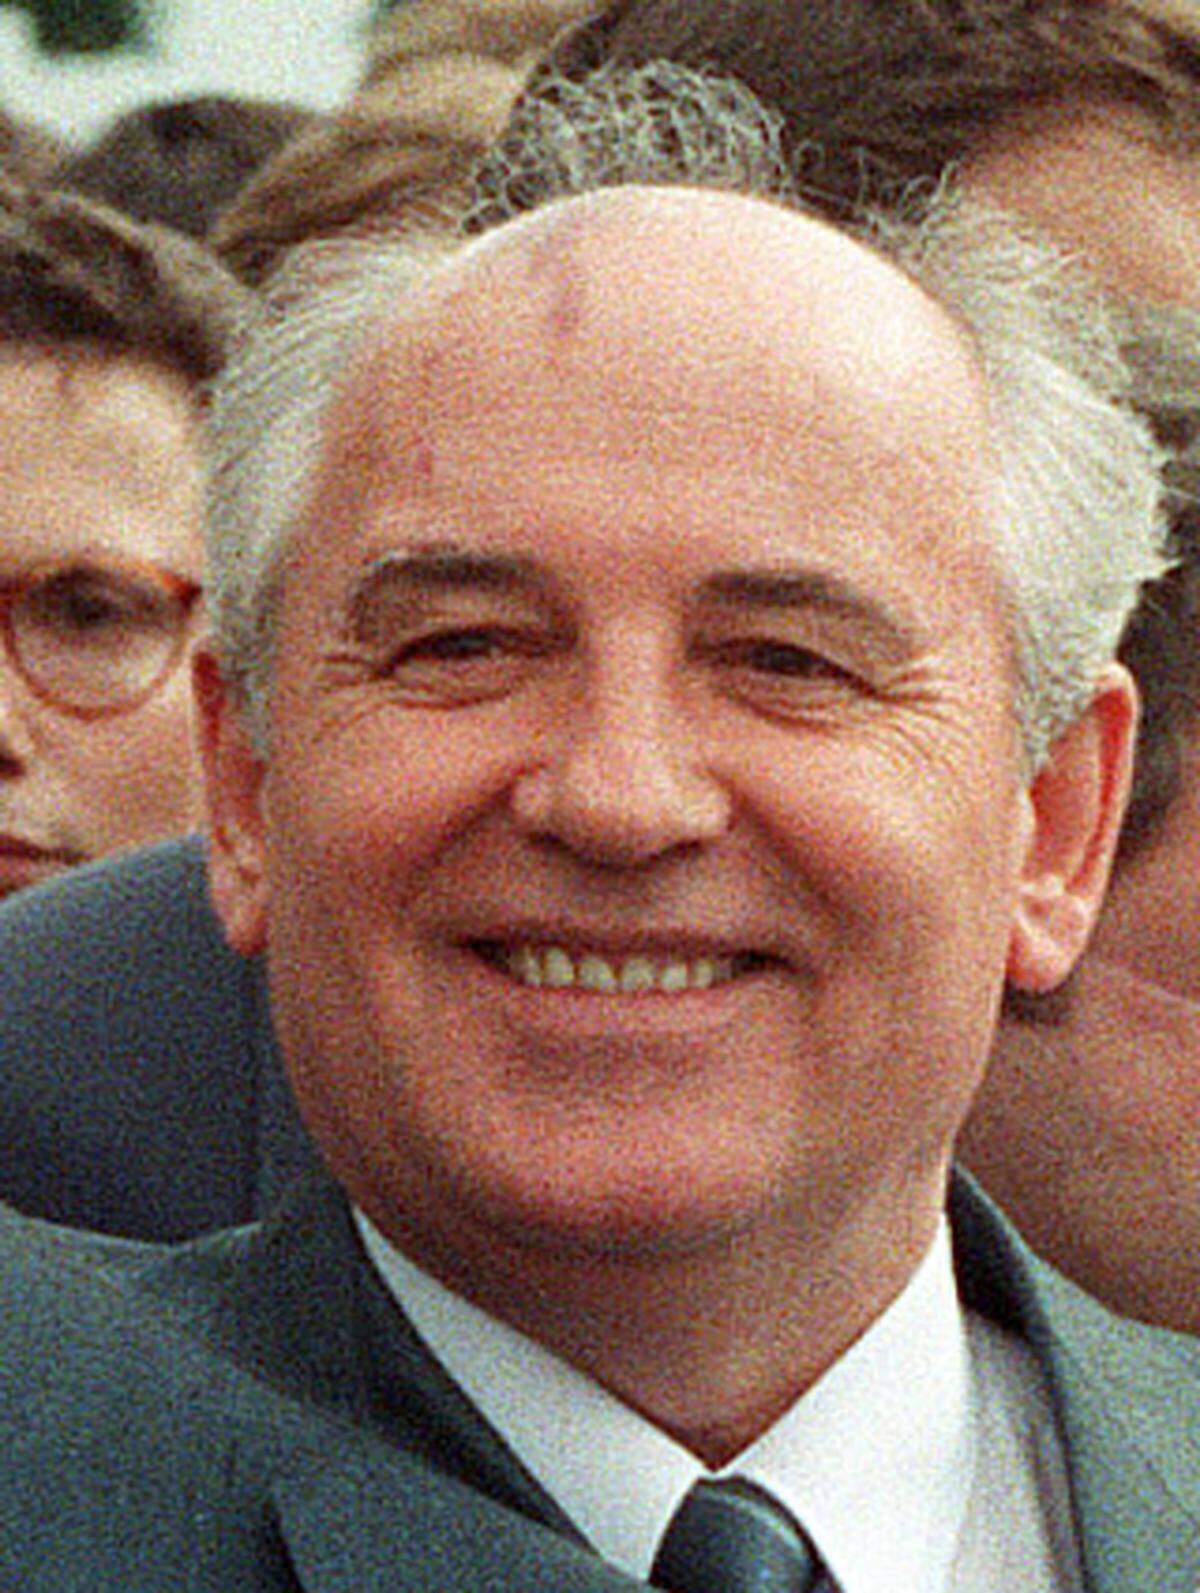 Der sowjetische Staats- und Parteichef Michail Gorbatschow trifft zu einem Besuch in Peking ein, der von den Protesten überschattet wird. Auf den protokollarischen Empfang vor der Großen Halle des Volkes muss das Regime verzichten.